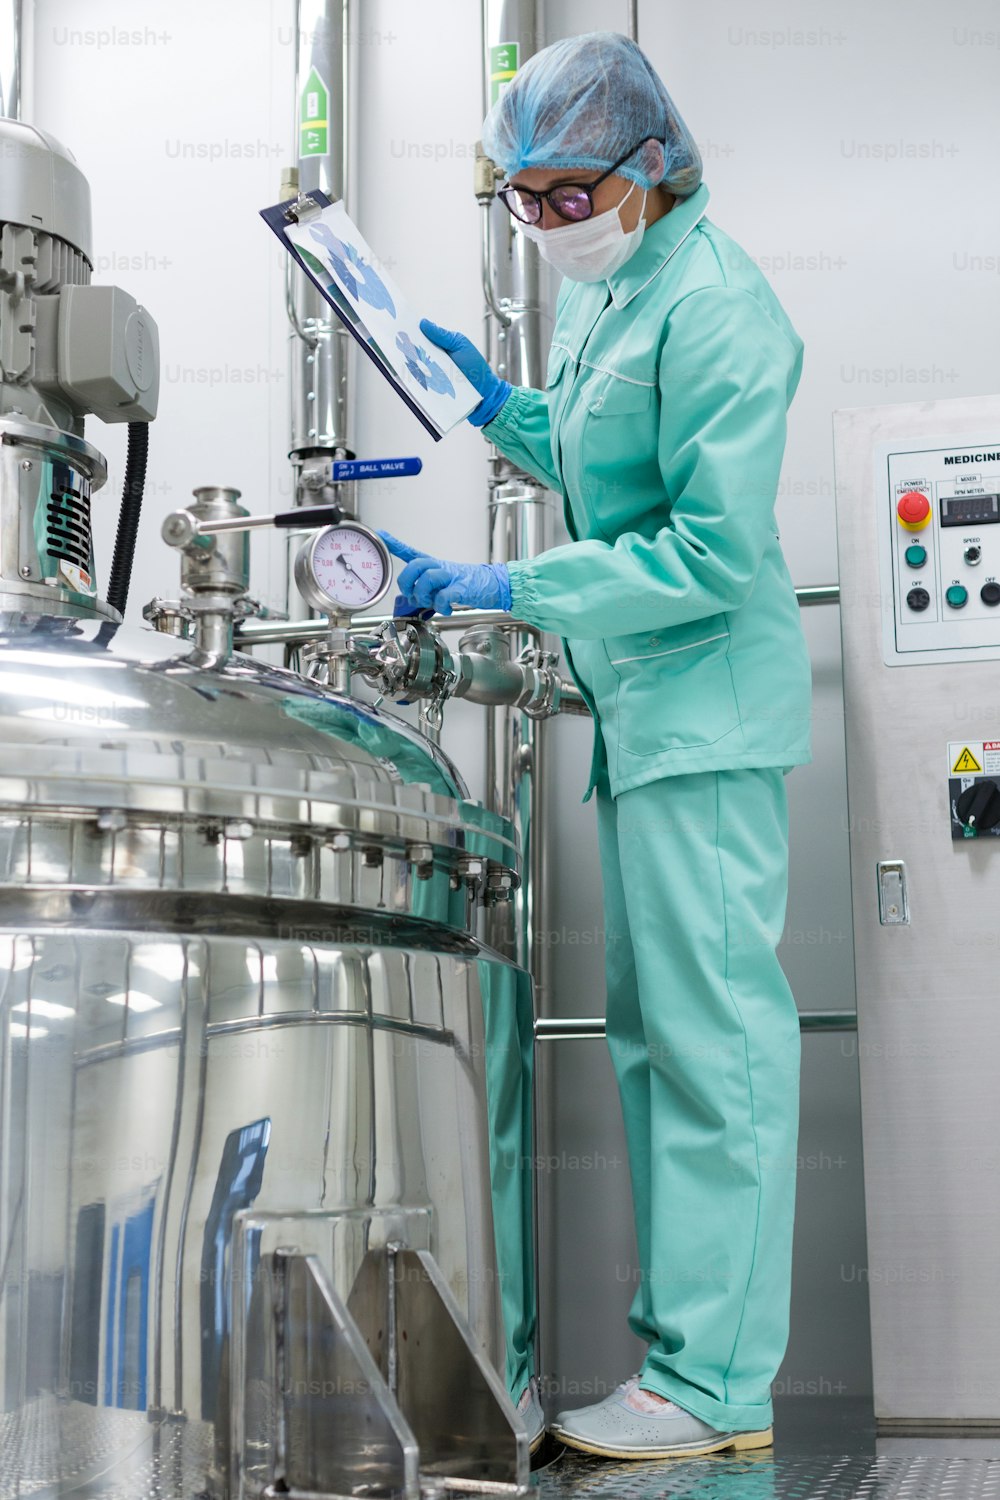 foto verticale, scienziato in uniforme blu da laboratorio controlla come funziona il serbatoio del compressore, tablet in mano